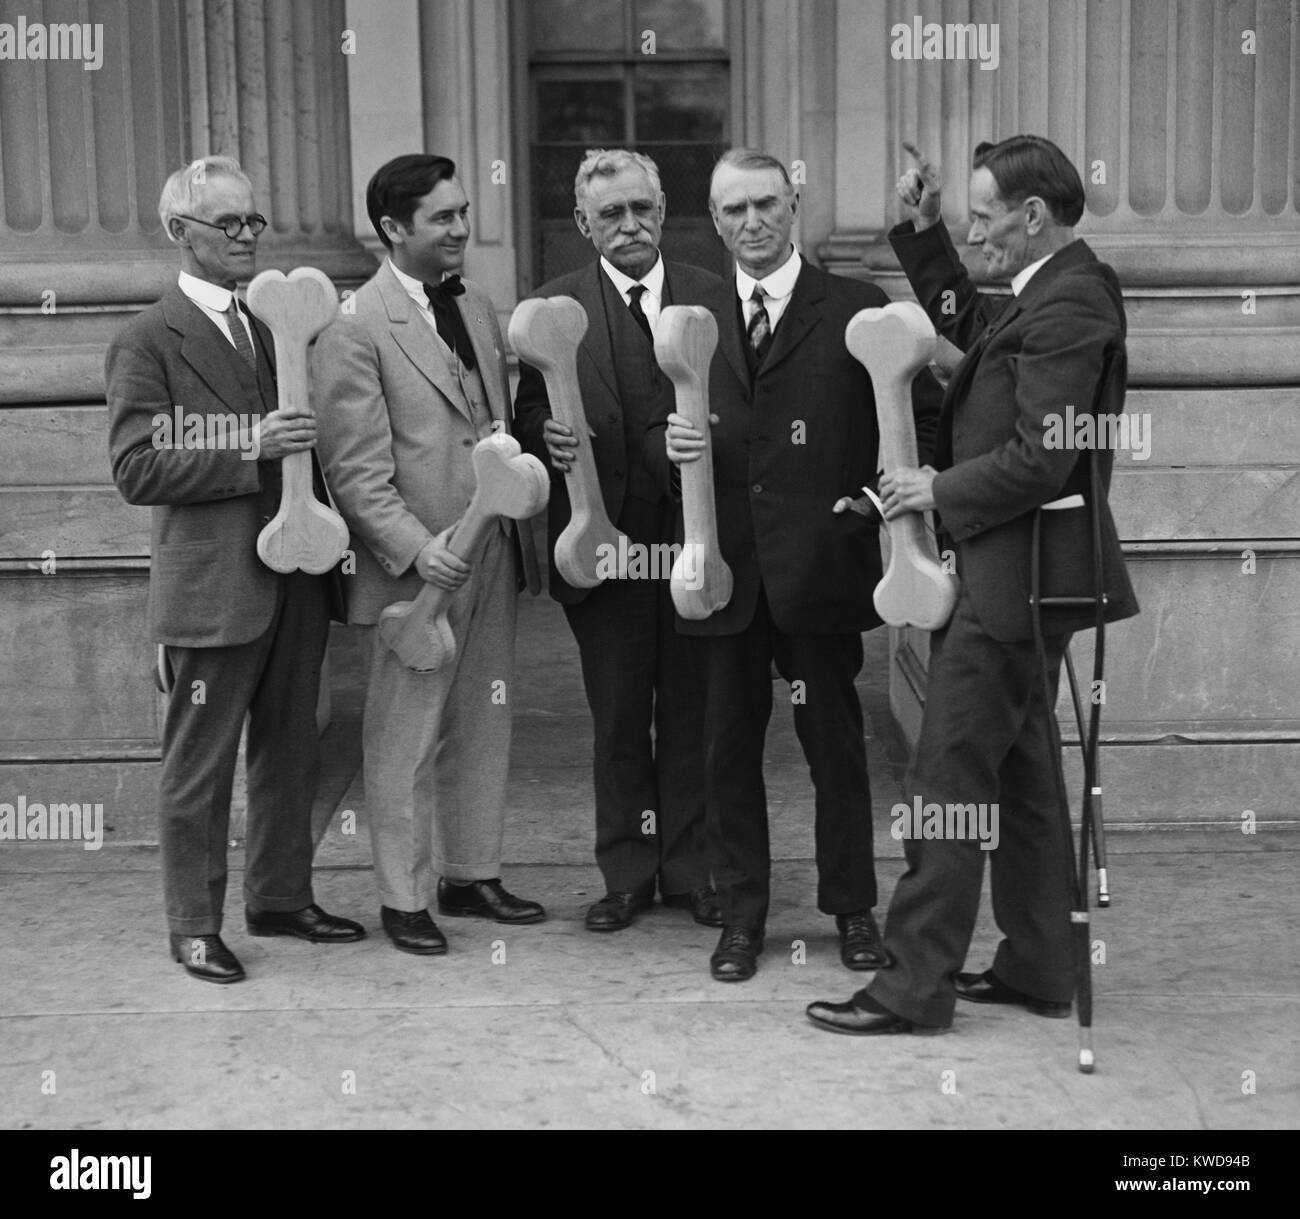 Der Kongressabgeordnete William Upshaw, von anderen' Männer Bone Dry'holding Knochen Requisiten an der U.S. Capitol. Upshaw, der "ryest der Drys', lief für Präsident für das Verbot der Partei im Jahr 1932 (BSLOC 2016 8 66) Stockfoto